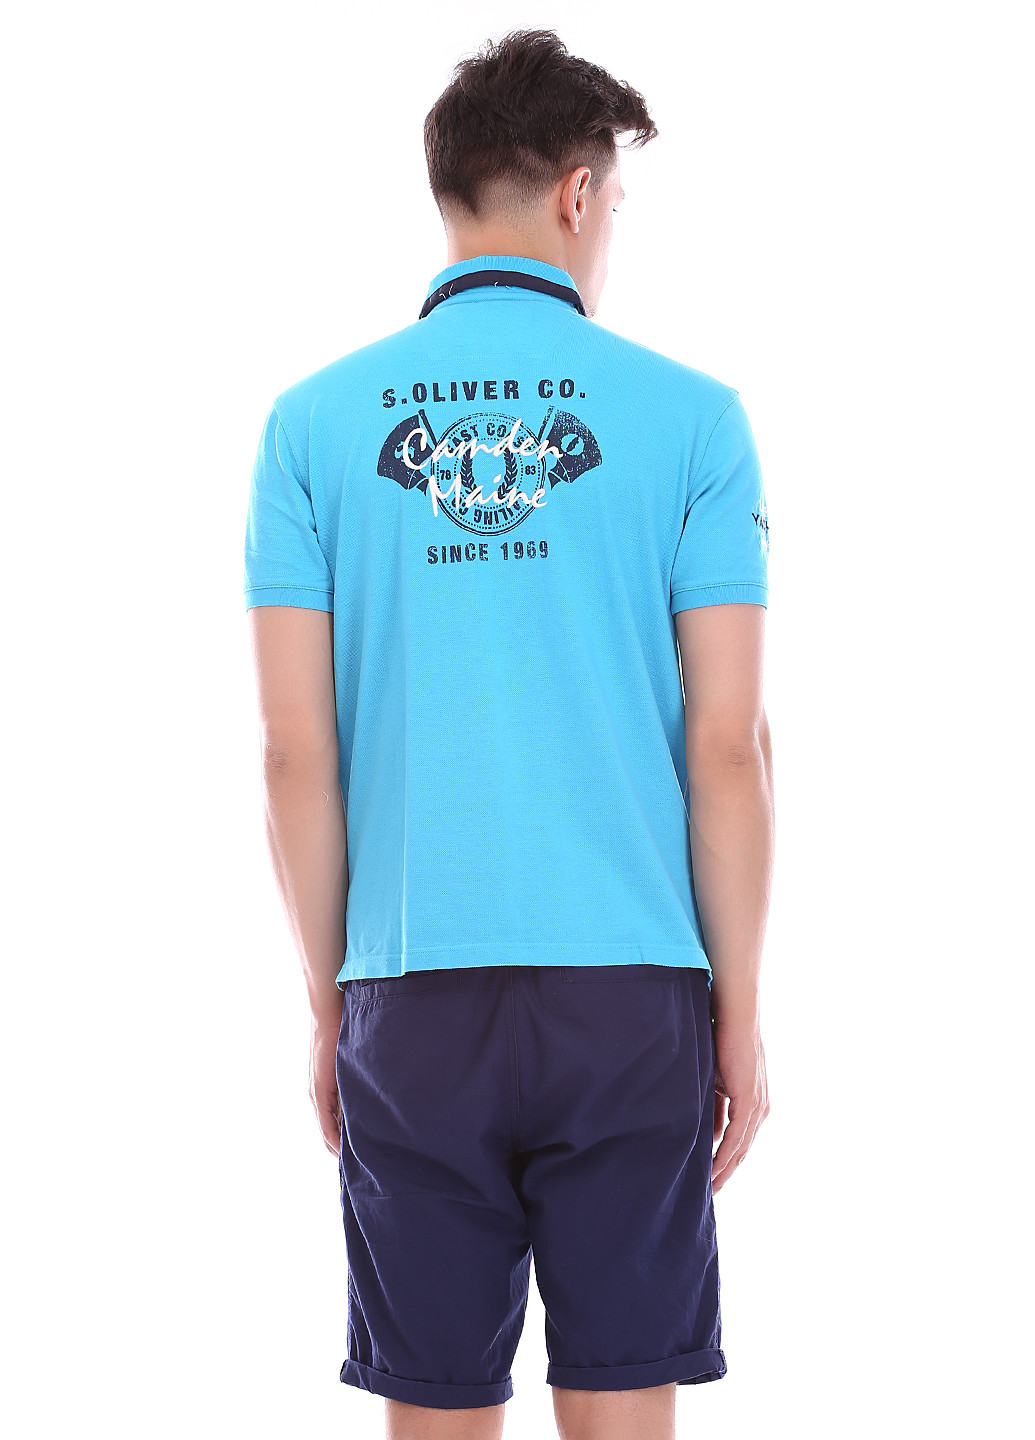 Голубой футболка-поло для мужчин S.Oliver с надписью